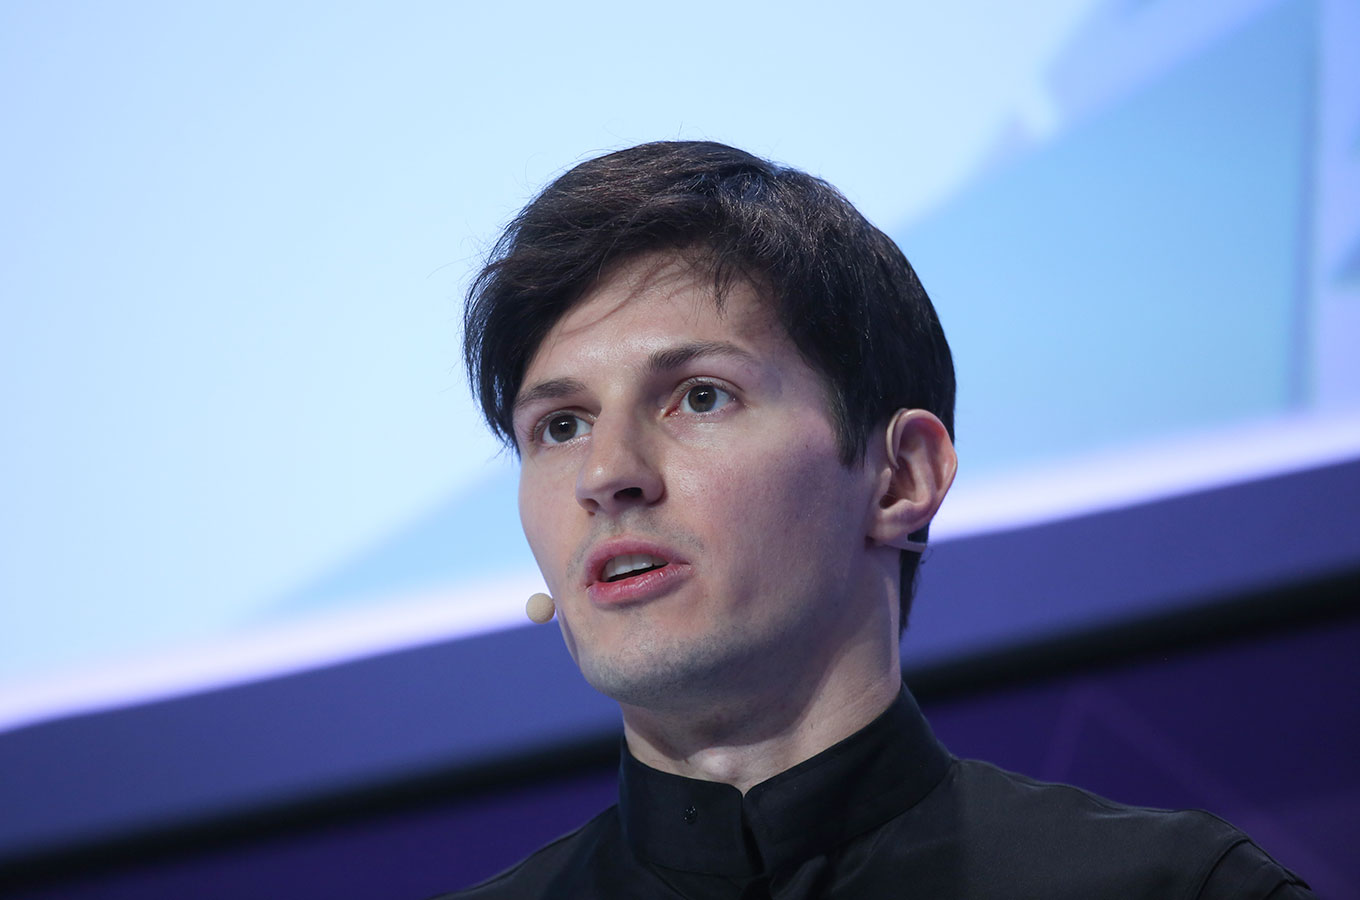 Разошелся: что говорит всем Павел Дуров, где правда и как это повлияло на стоимость его криптовалюты TON